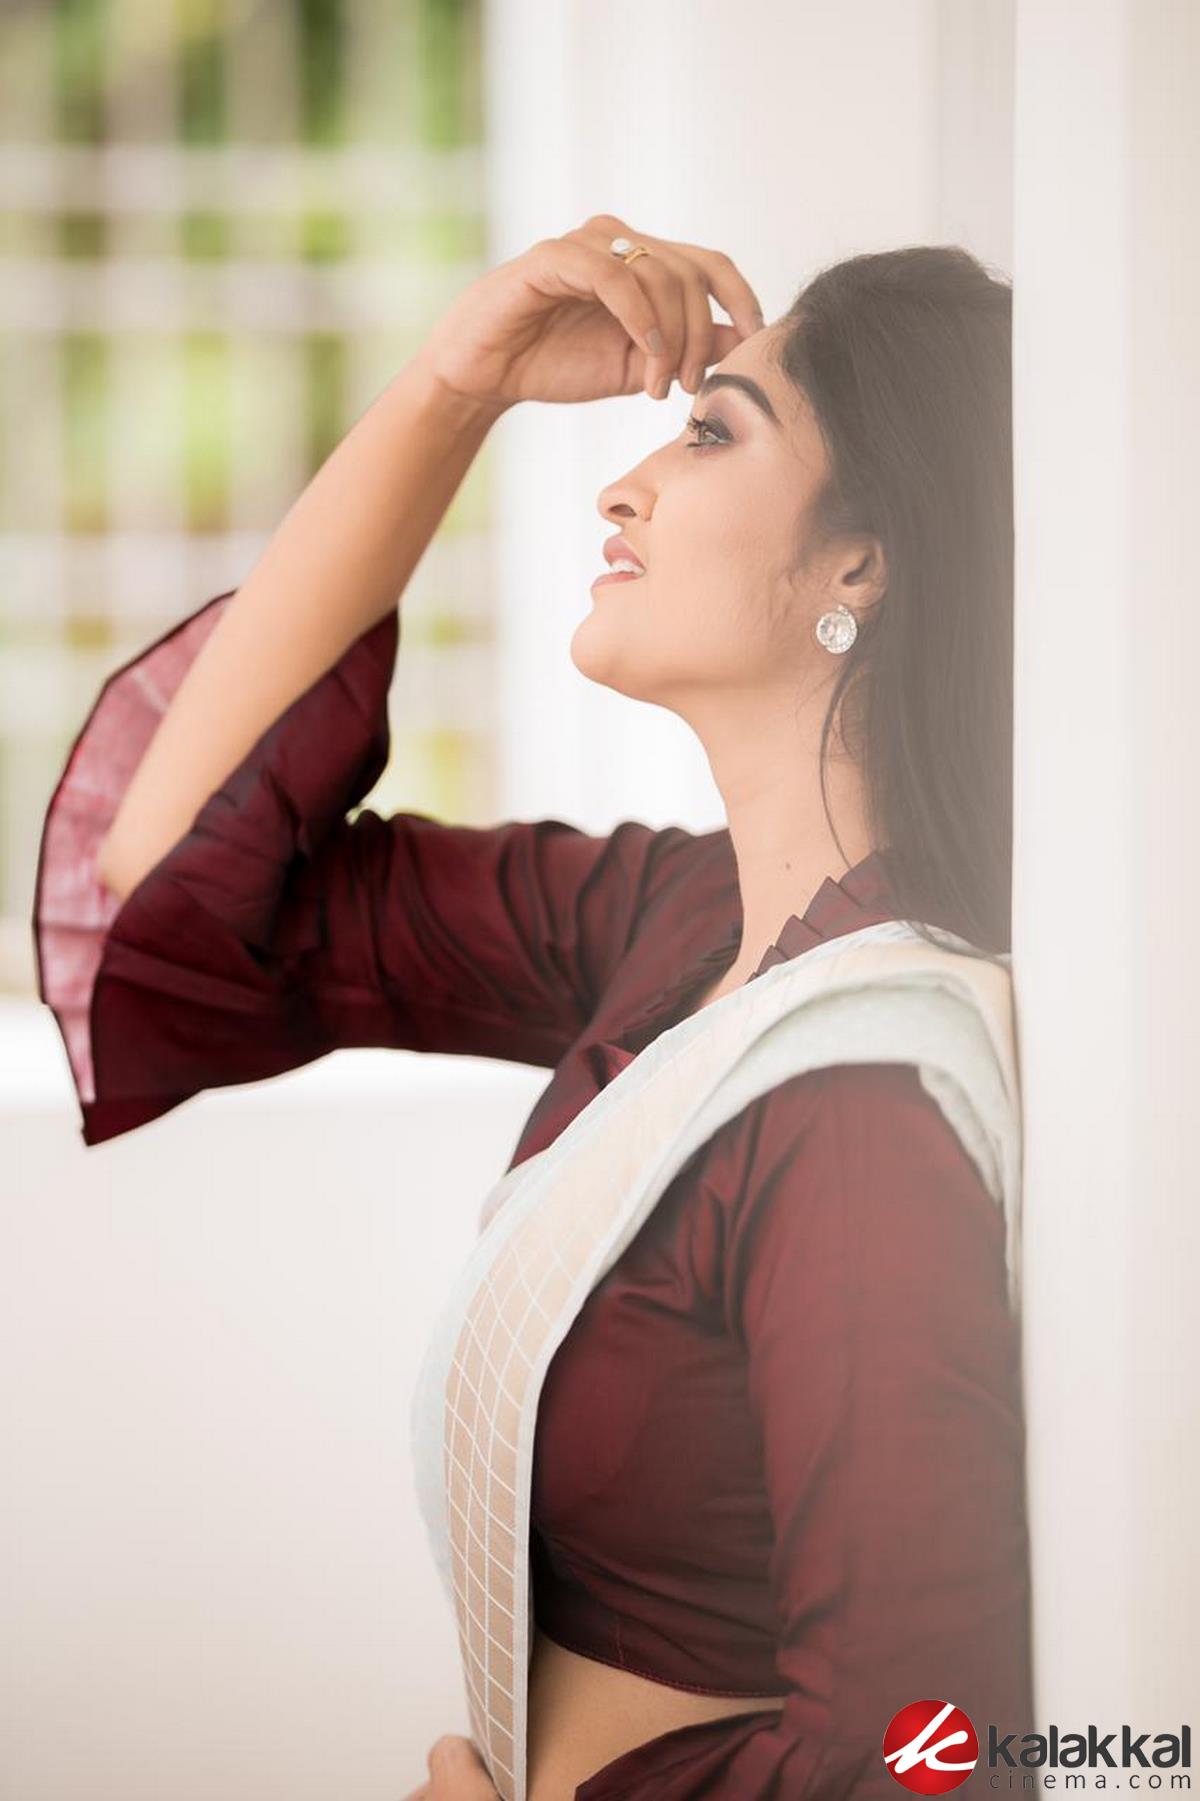 Actress Neelima Esai looks stunning in this saree